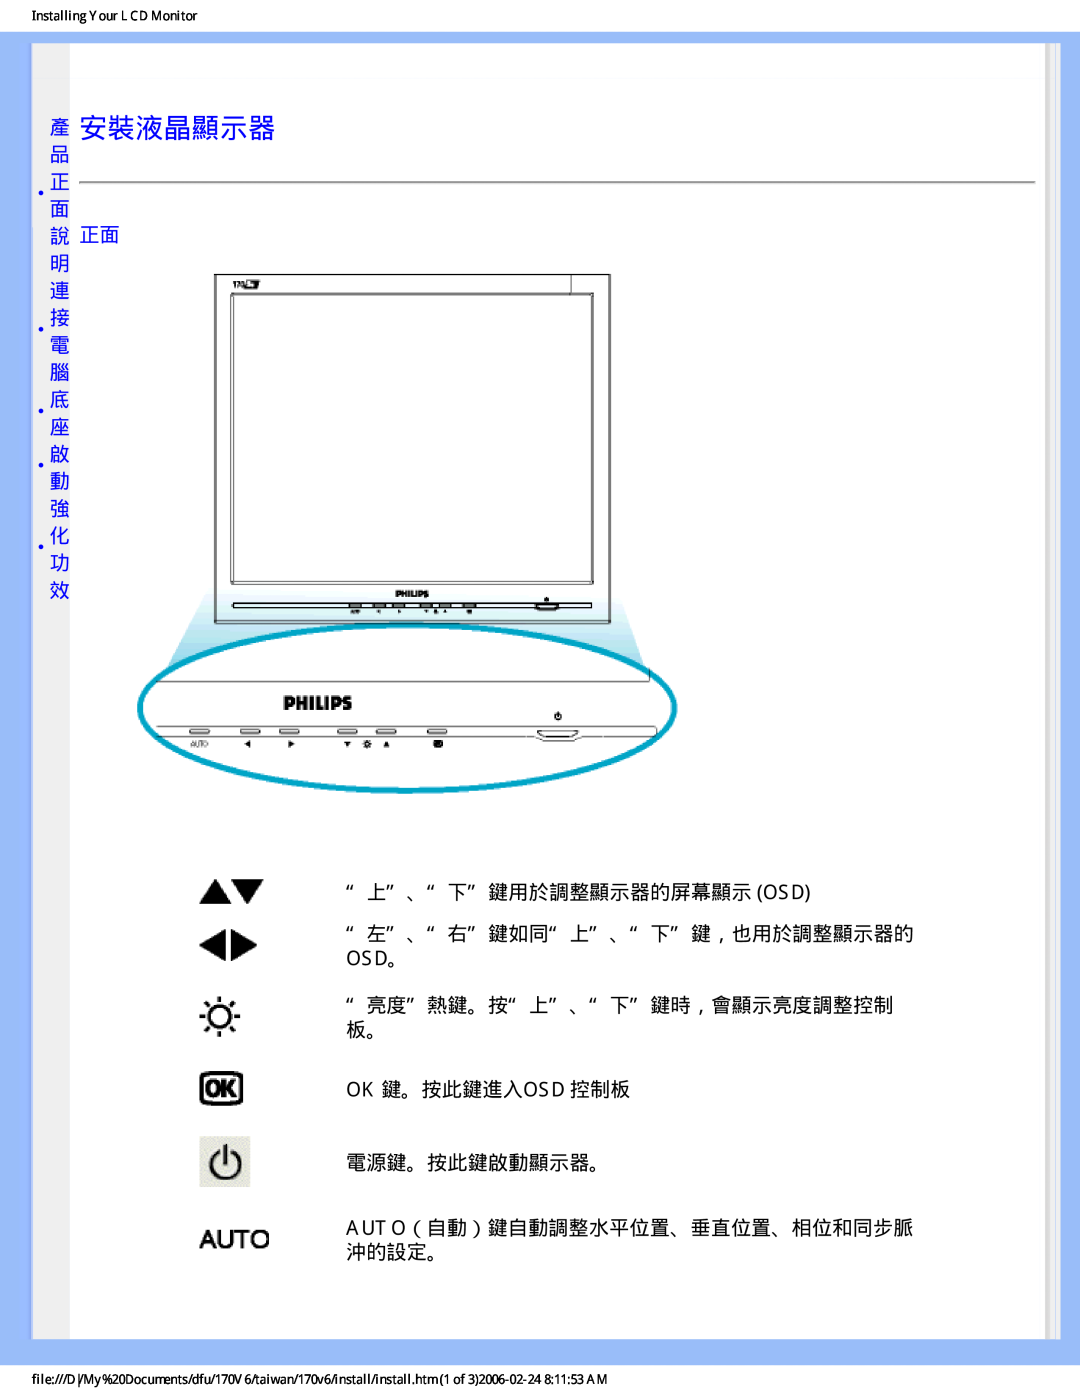 Philips 170V6 產 安裝液晶顯示器, 說 正面 明 連 •接電 腦 •底座 •啟動 強 •化功 效, “上”、“下”鍵用於調整顯示器的屏幕顯示 Osd, “左”、“右”鍵如同“上”、“下”鍵，也用於調整顯示器的 Osd。, • 正面 